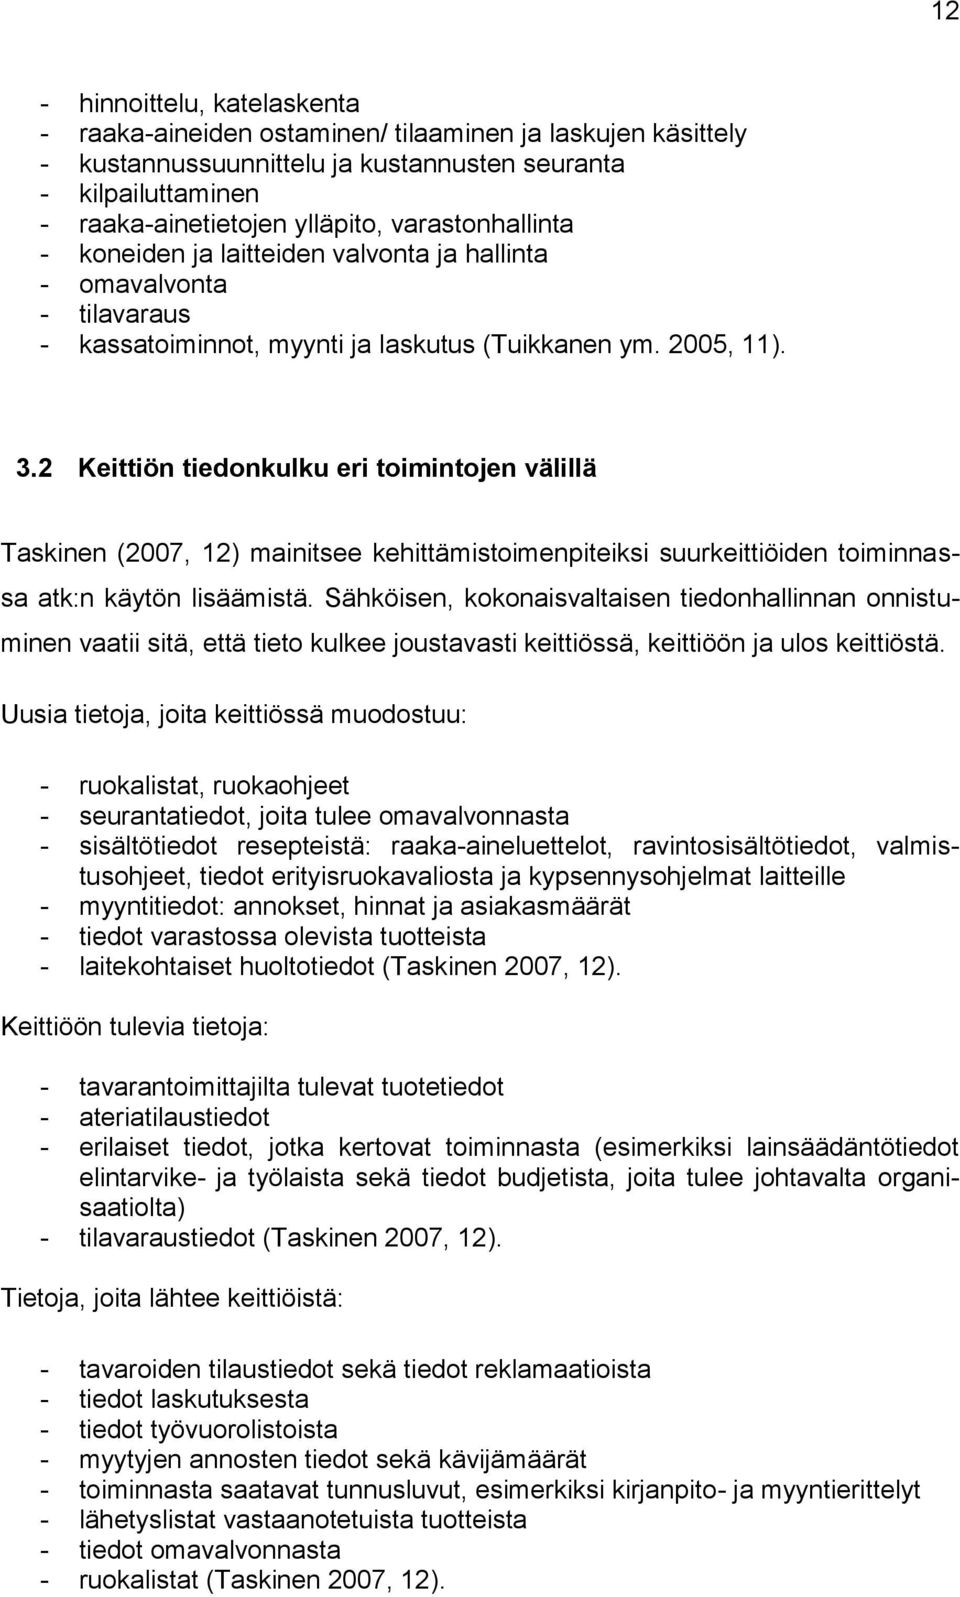 2 Keittiön tiedonkulku eri toimintojen välillä Taskinen (2007, 12) mainitsee kehittämistoimenpiteiksi suurkeittiöiden toiminnassa atk:n käytön lisäämistä.